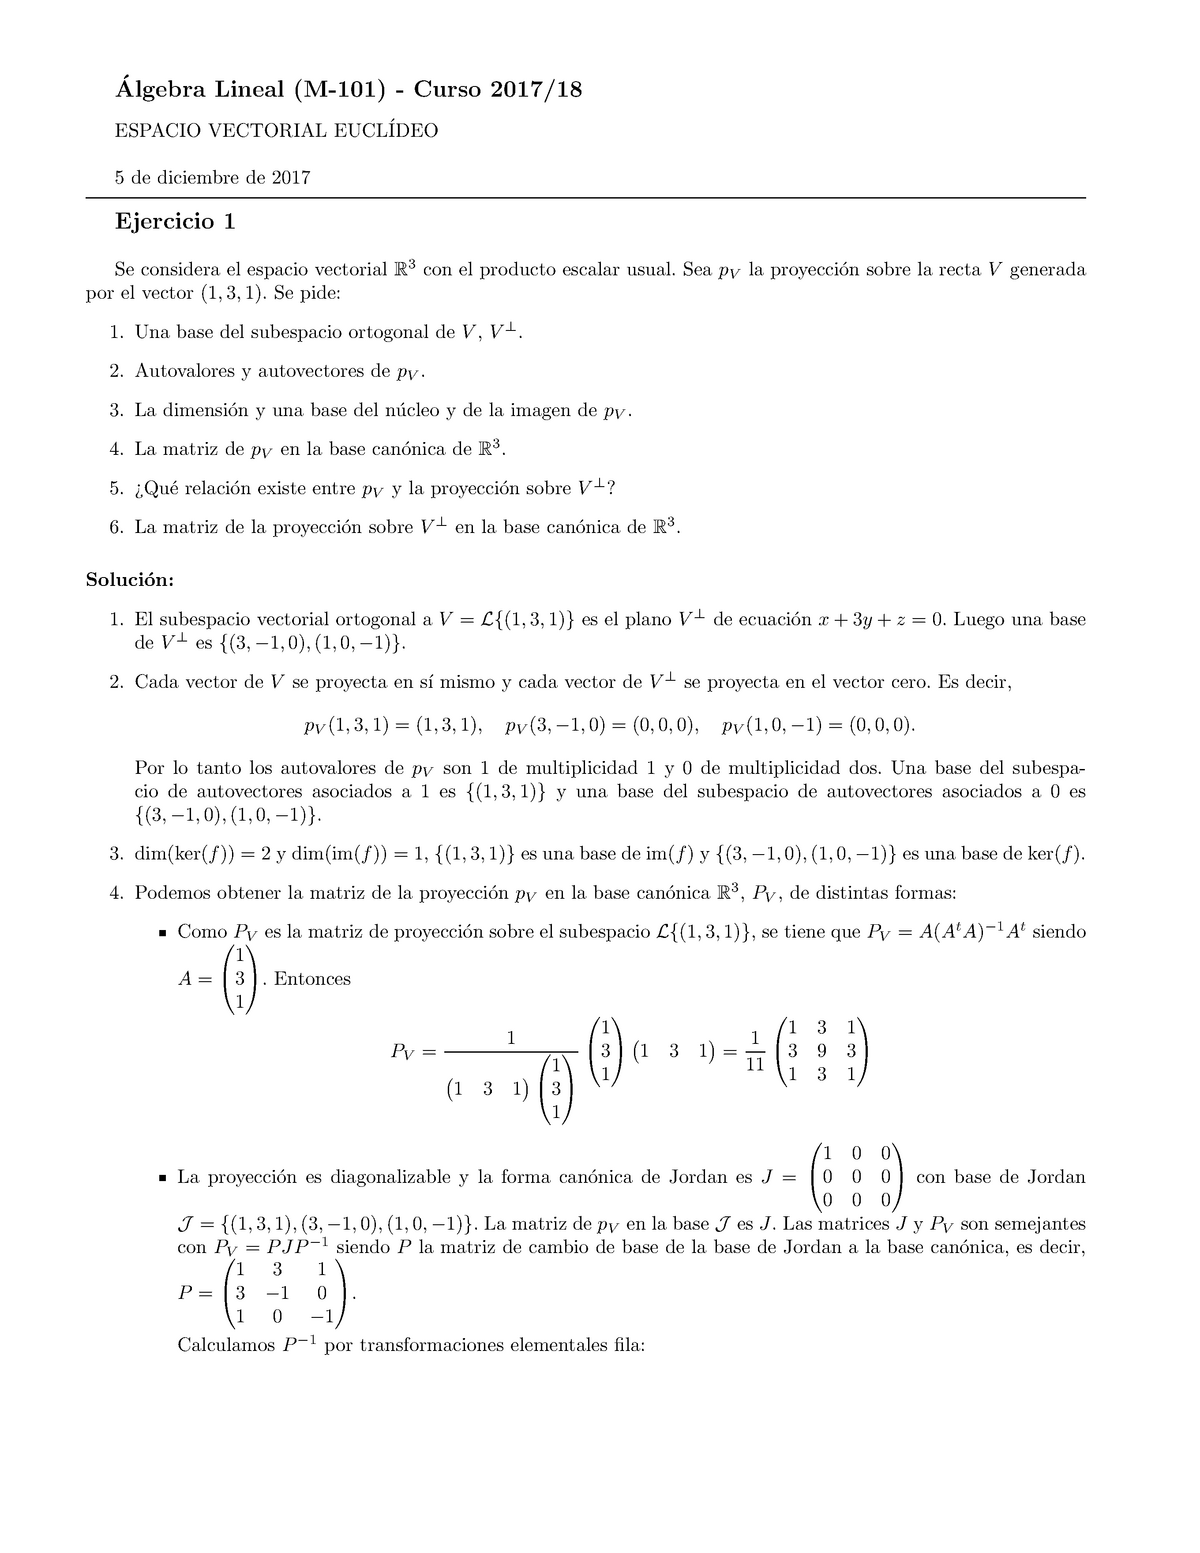 Ejercicios Tema Mates Matemáticas Mbaf001104 Uem Studocu